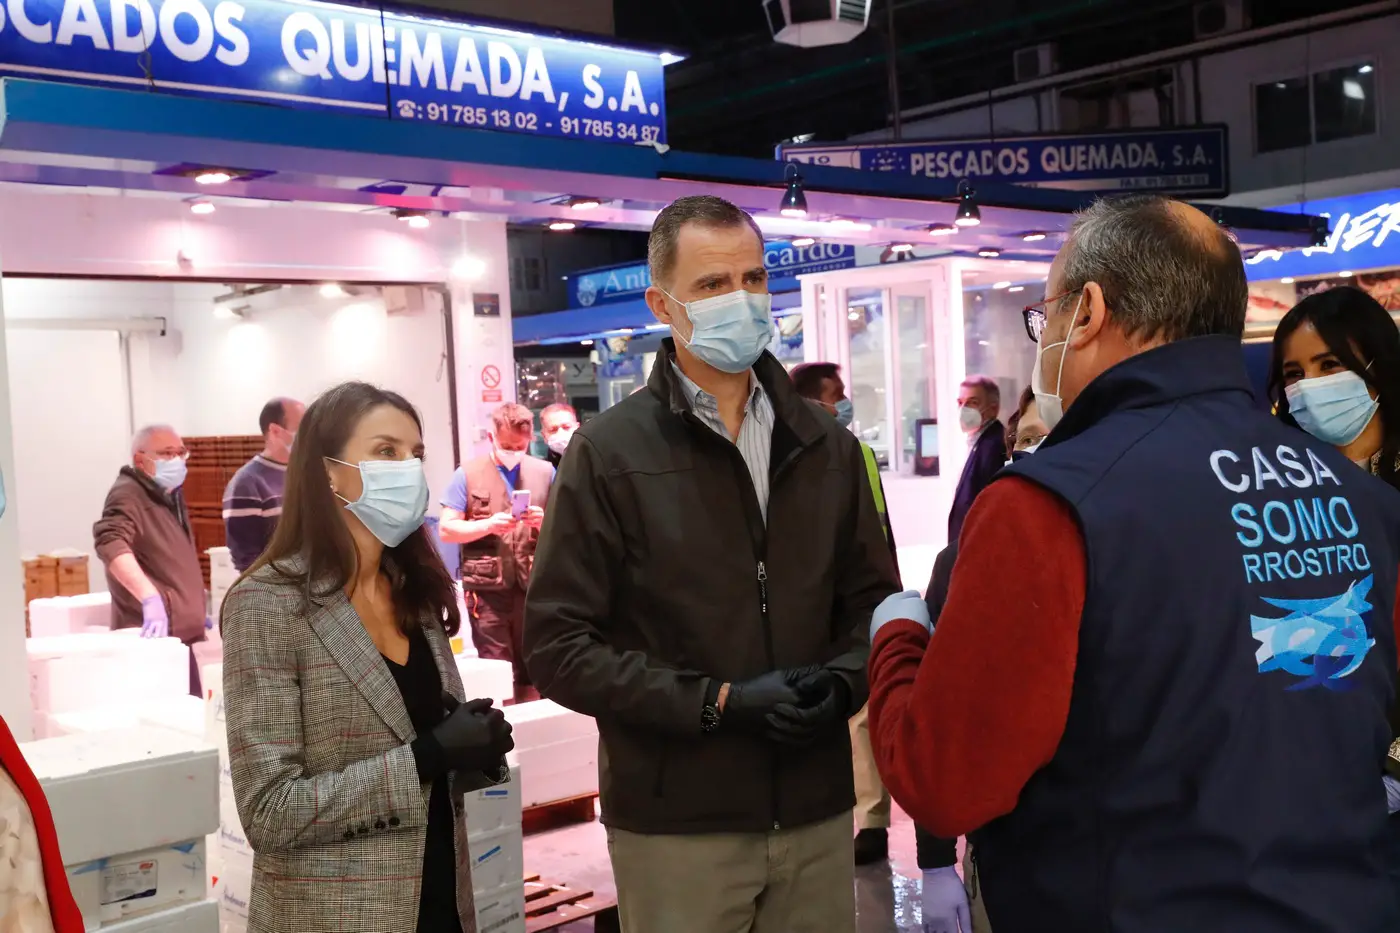 King Felipe and Queen Letizia undertook another public engagement amid Coronavirus